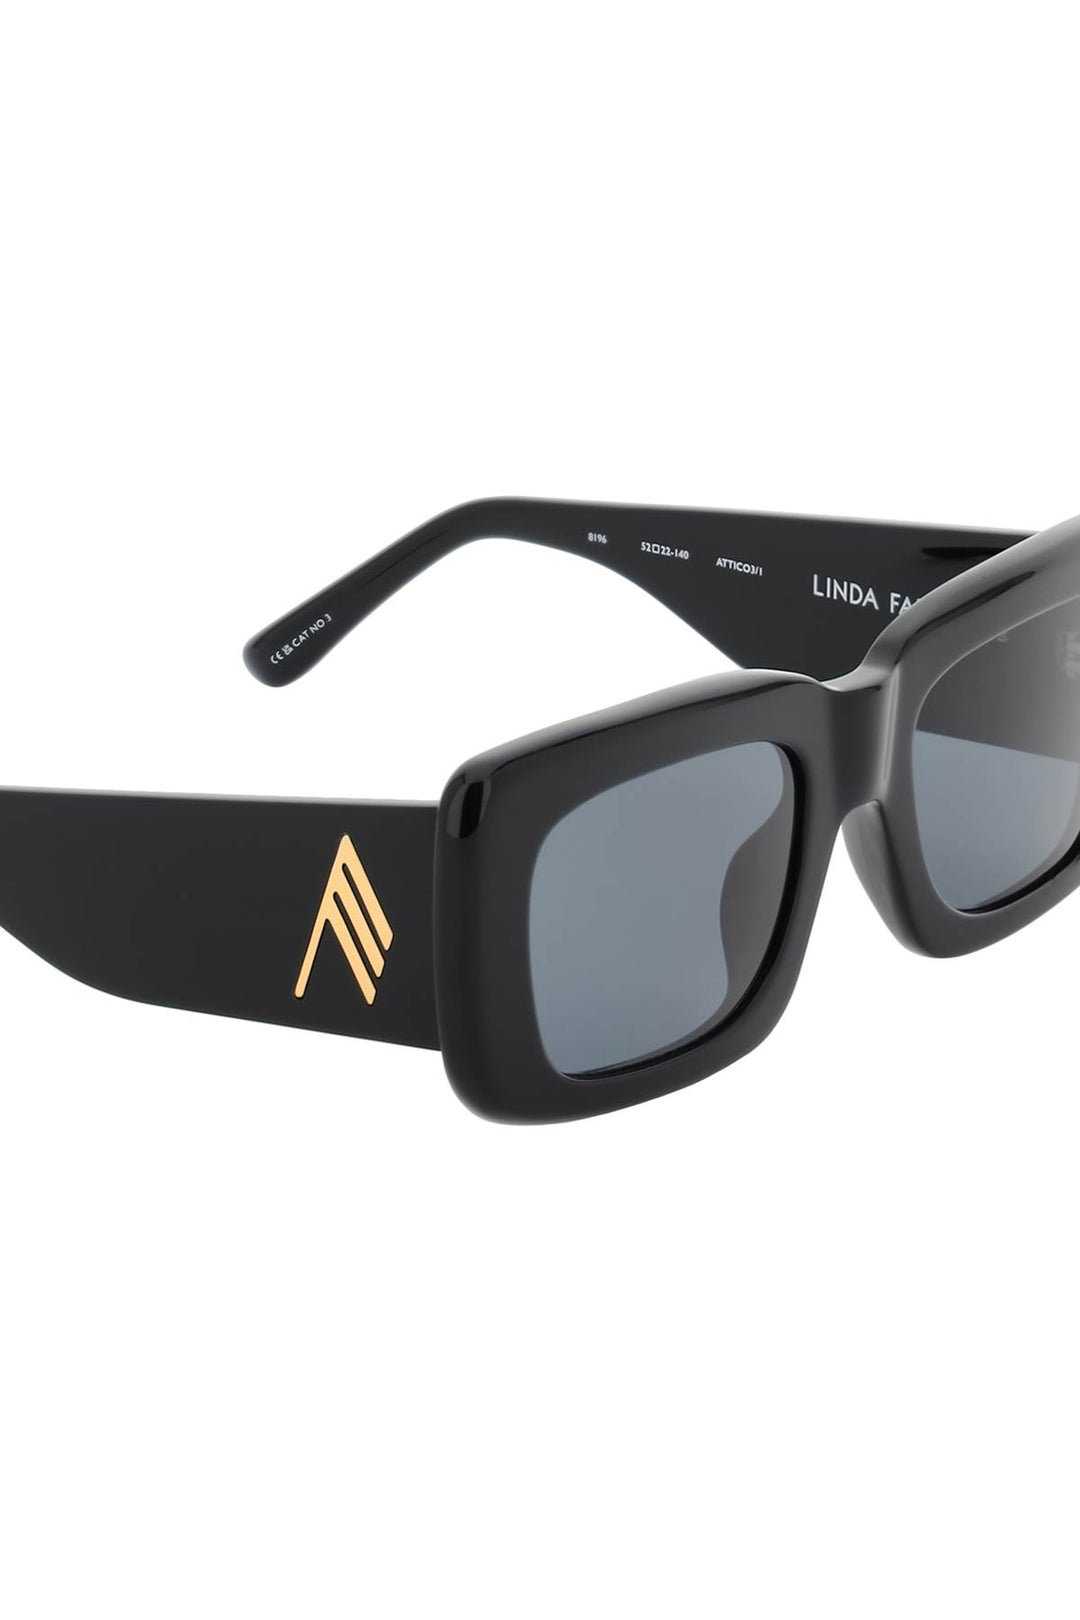 The Attico 'Marfa' Sunglasses   Nero